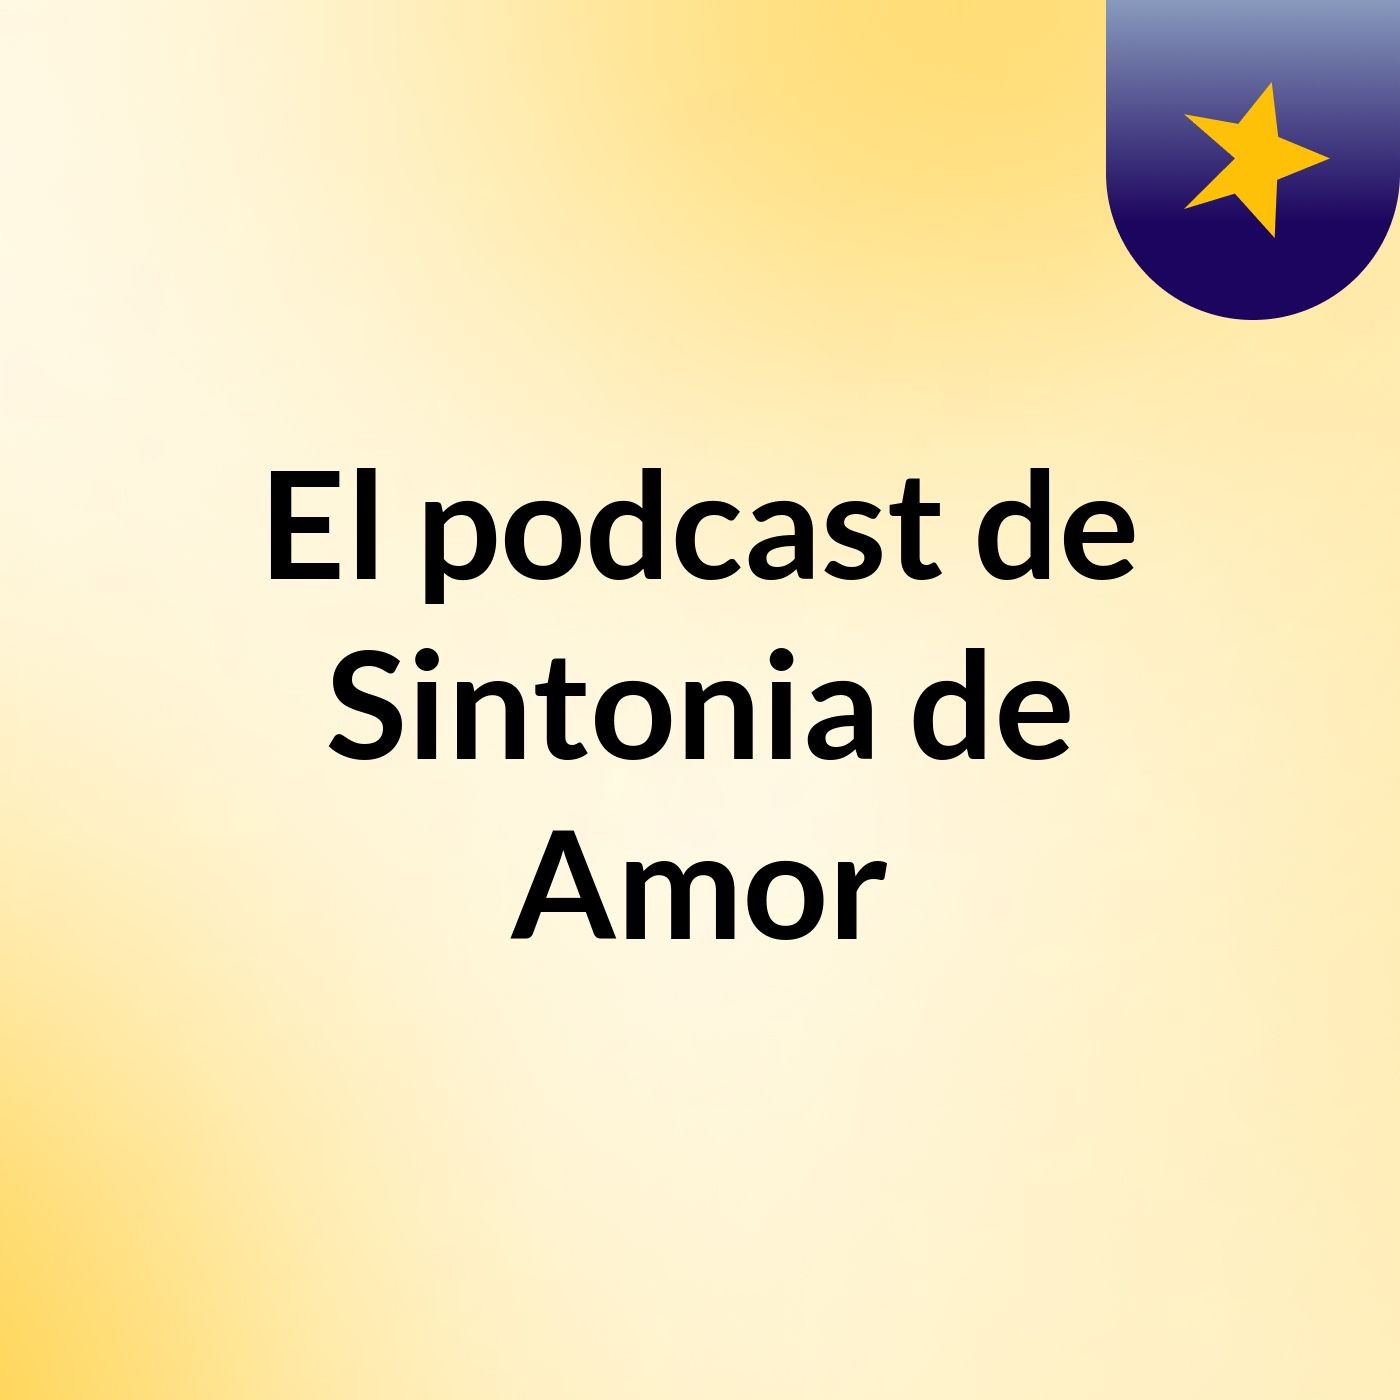 El podcast de Sintonia de Amor